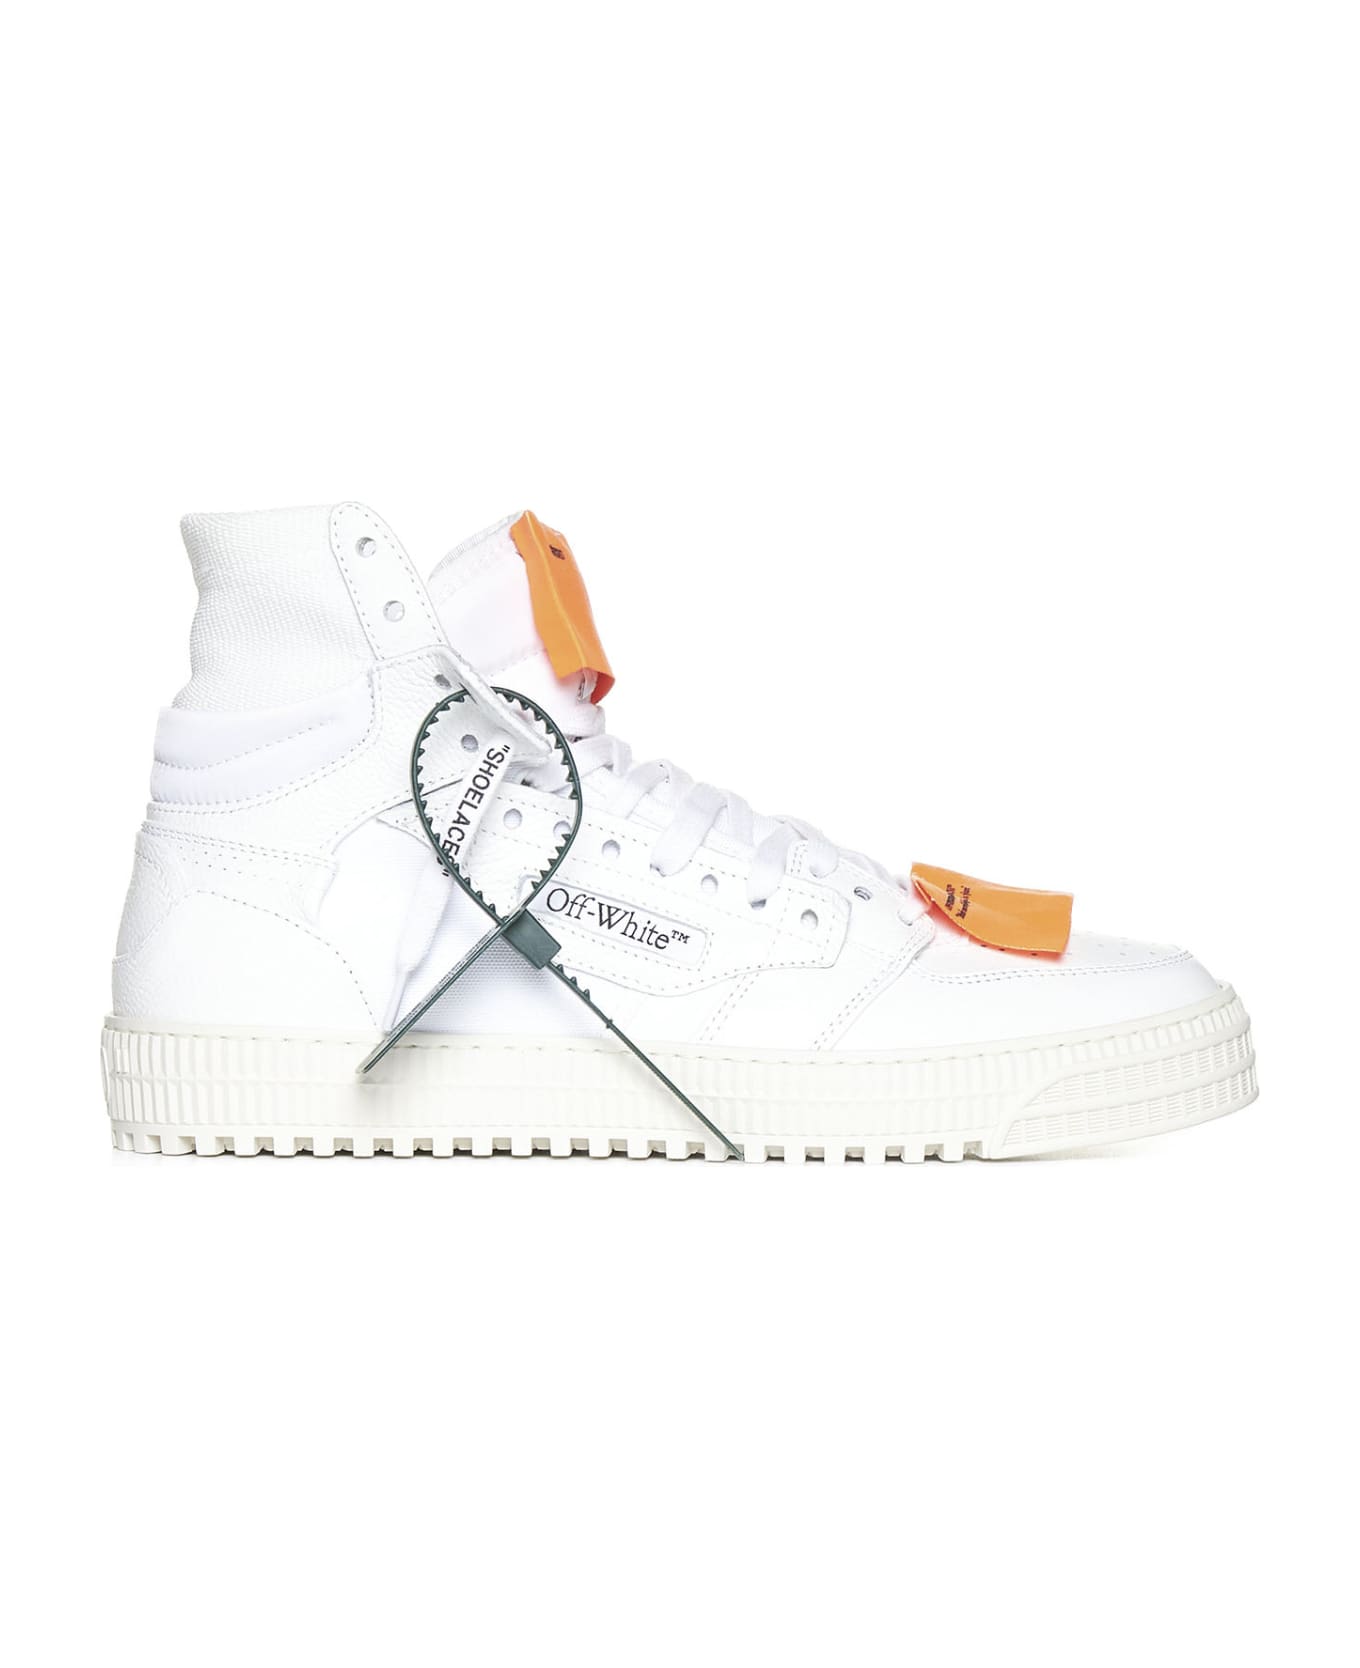 Off-White Sneakers - White orange